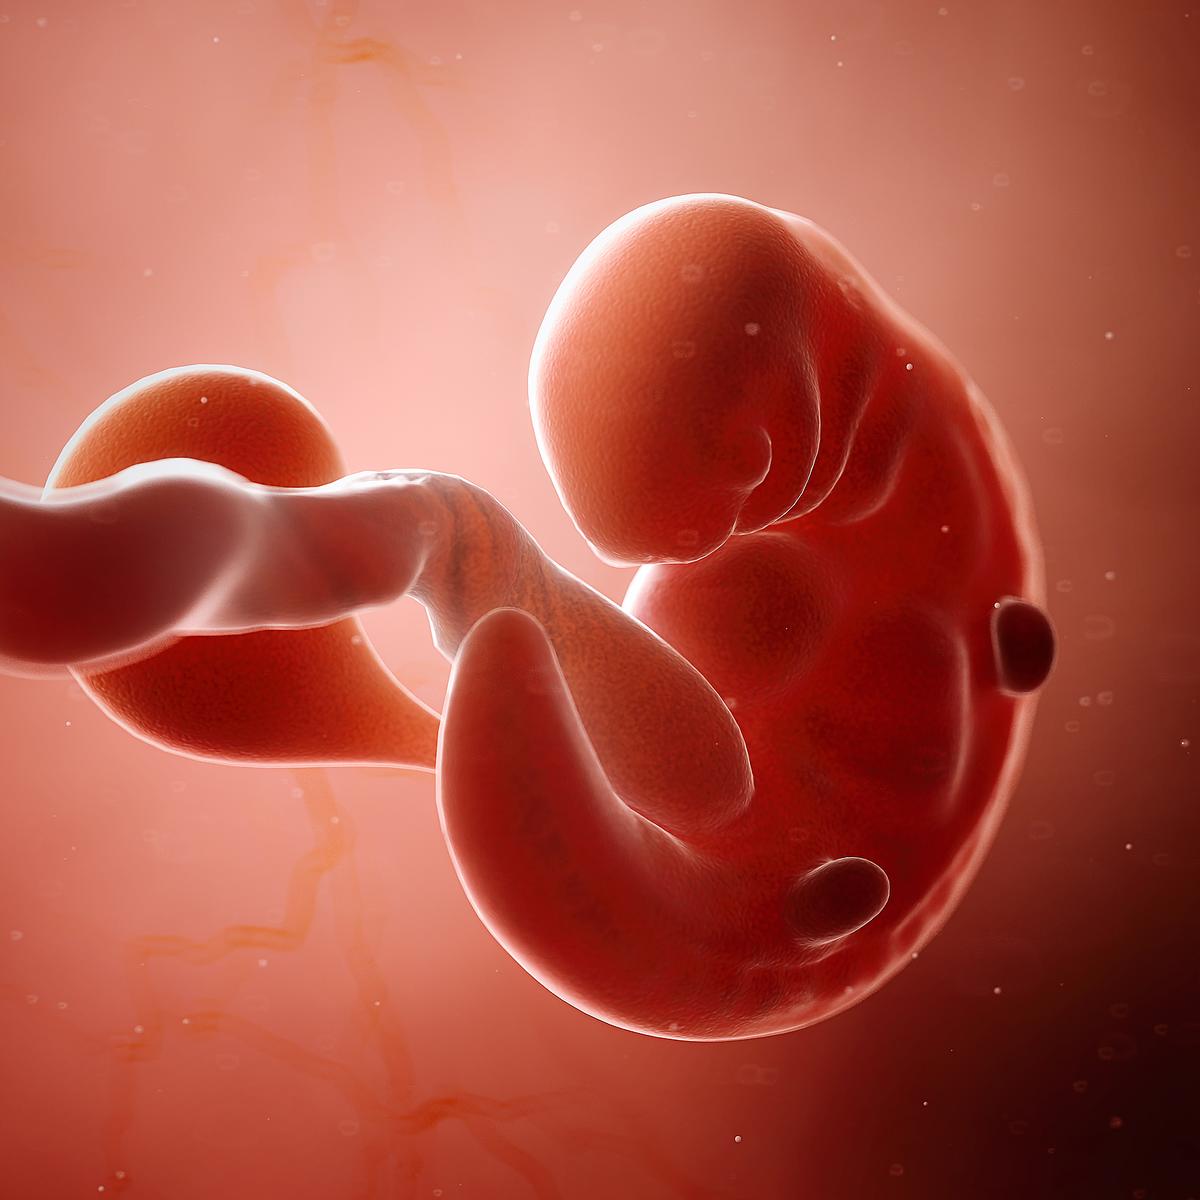 Entwicklung des Fötus - Der Embryo in der 6. SSW ähnelt einem Menschen noch nicht